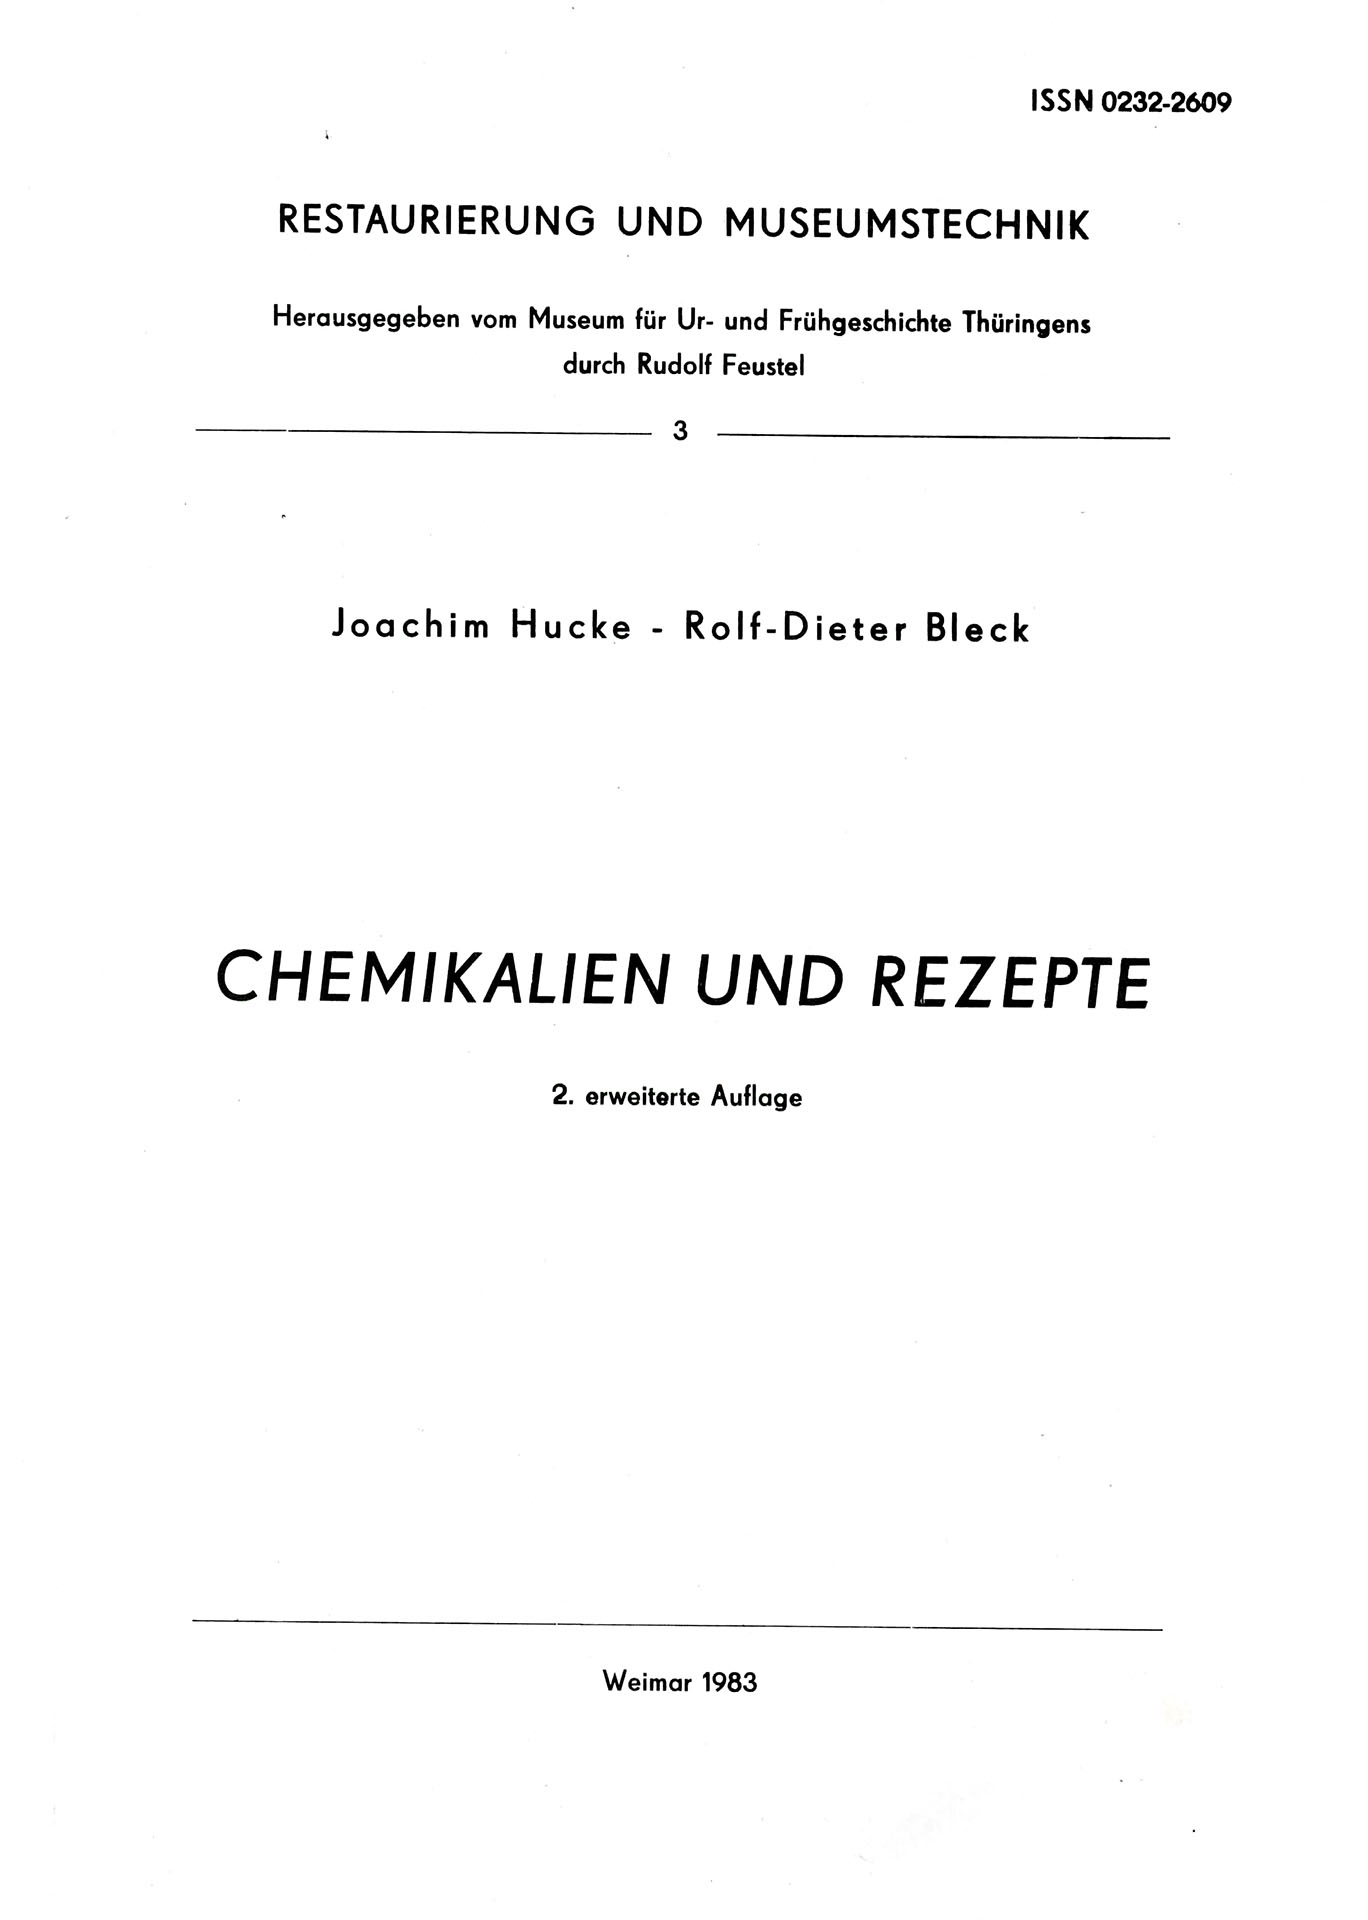 Chemikalien und Rezepte - Hucke, Joachim / Bleck, Rolf - Dieter